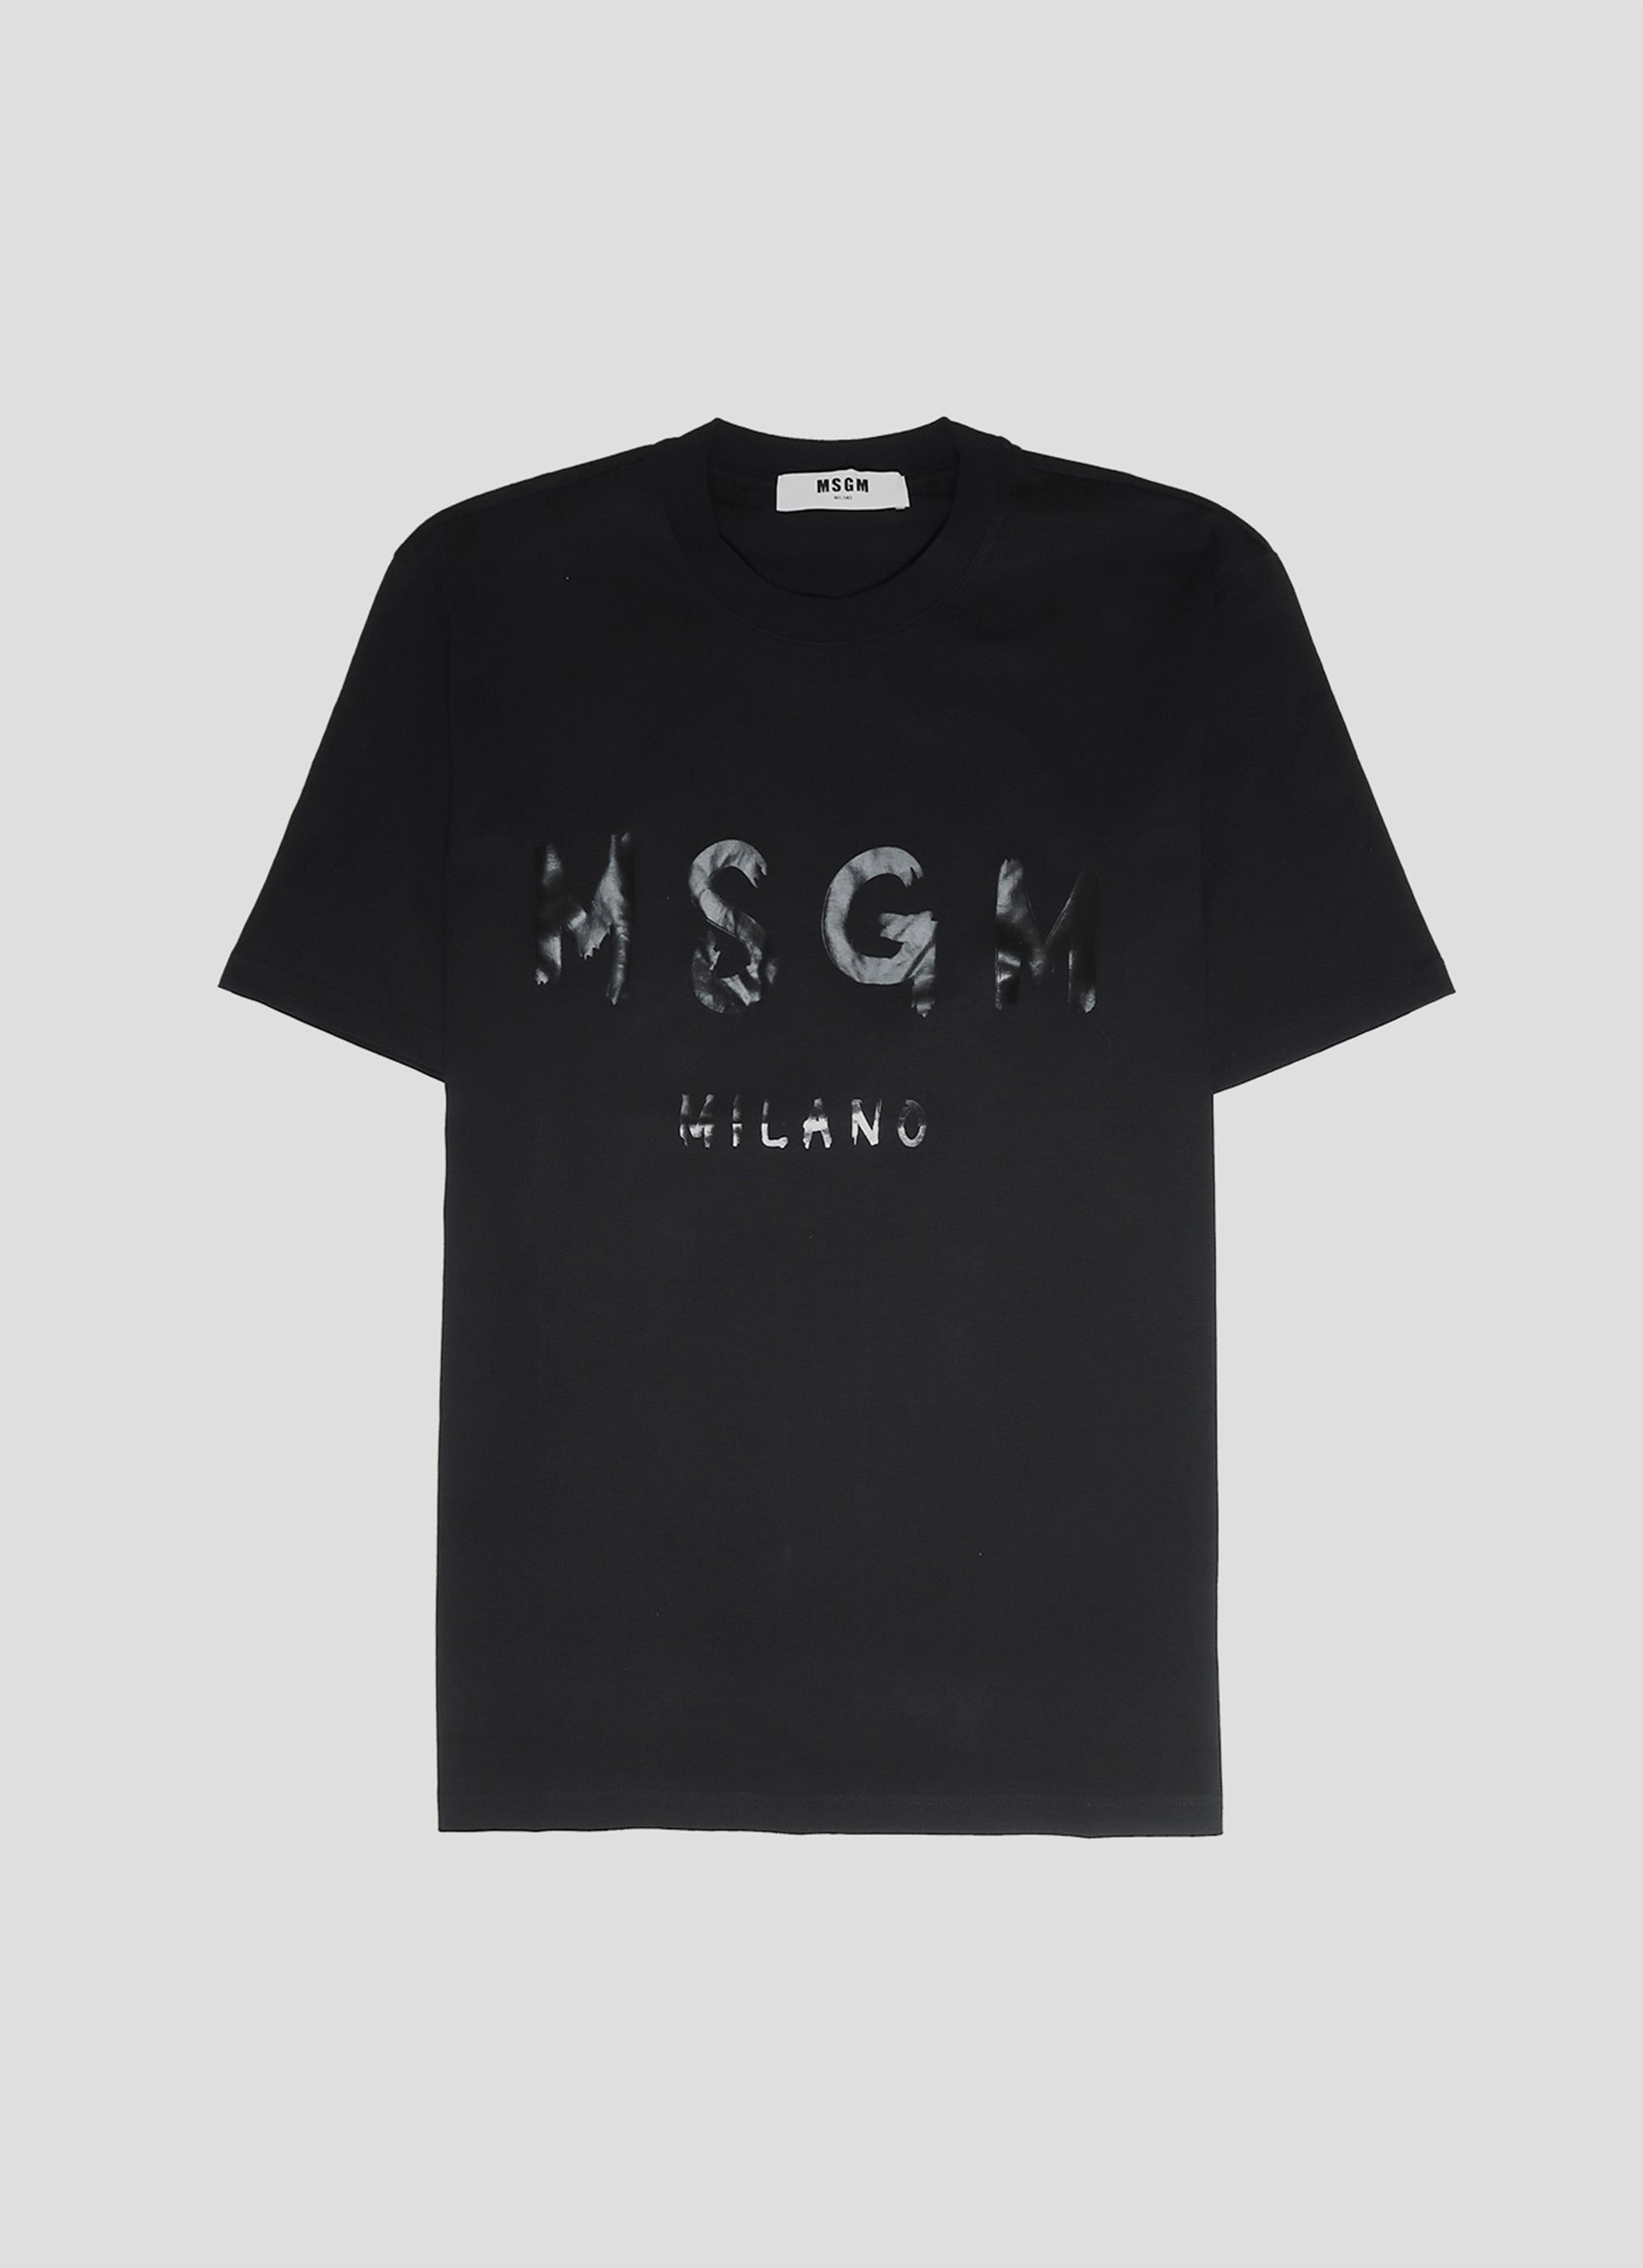 MSGM ブラッシュロゴTシャツ【EXCLUSIVE】 詳細画像 ブラック×ブラック 1